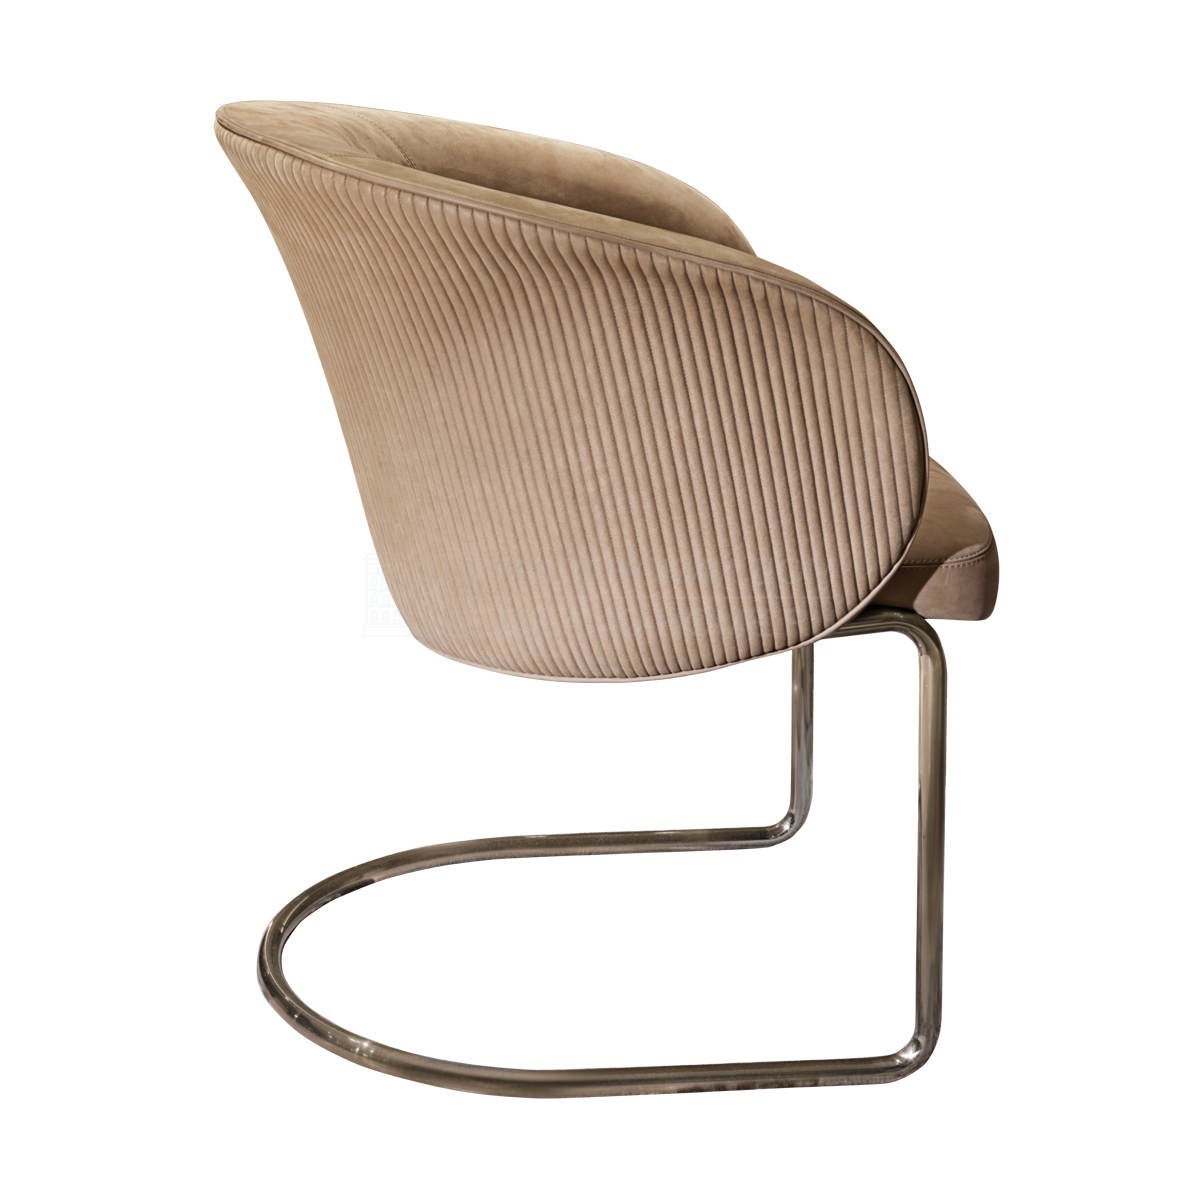 Полукресло Carmen Steel chair из Италии фабрики IPE CAVALLI VISIONNAIRE